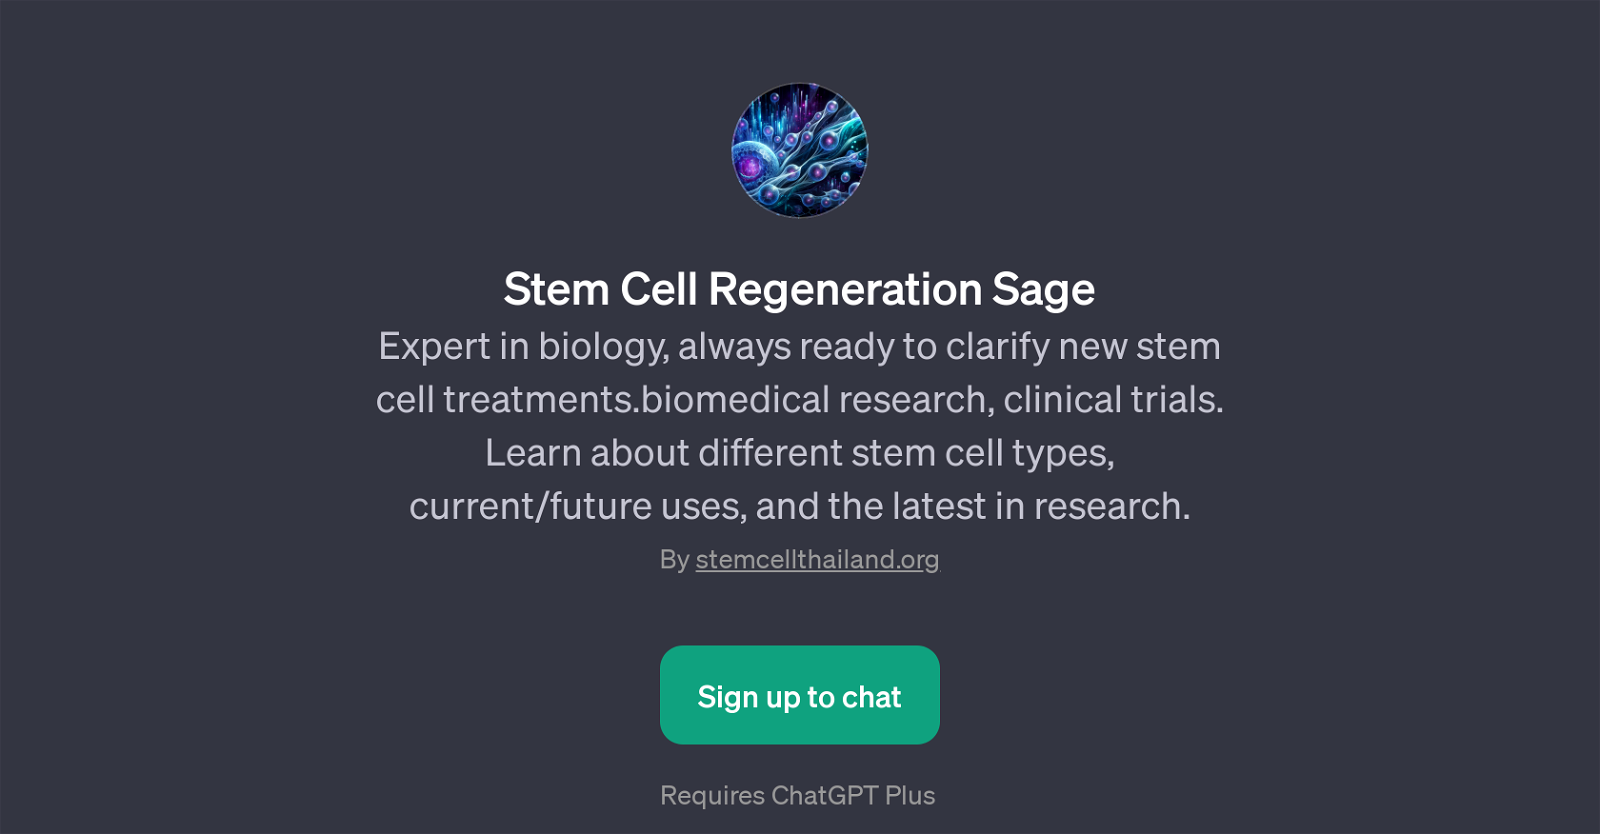 Stem Cell Regeneration Sage website